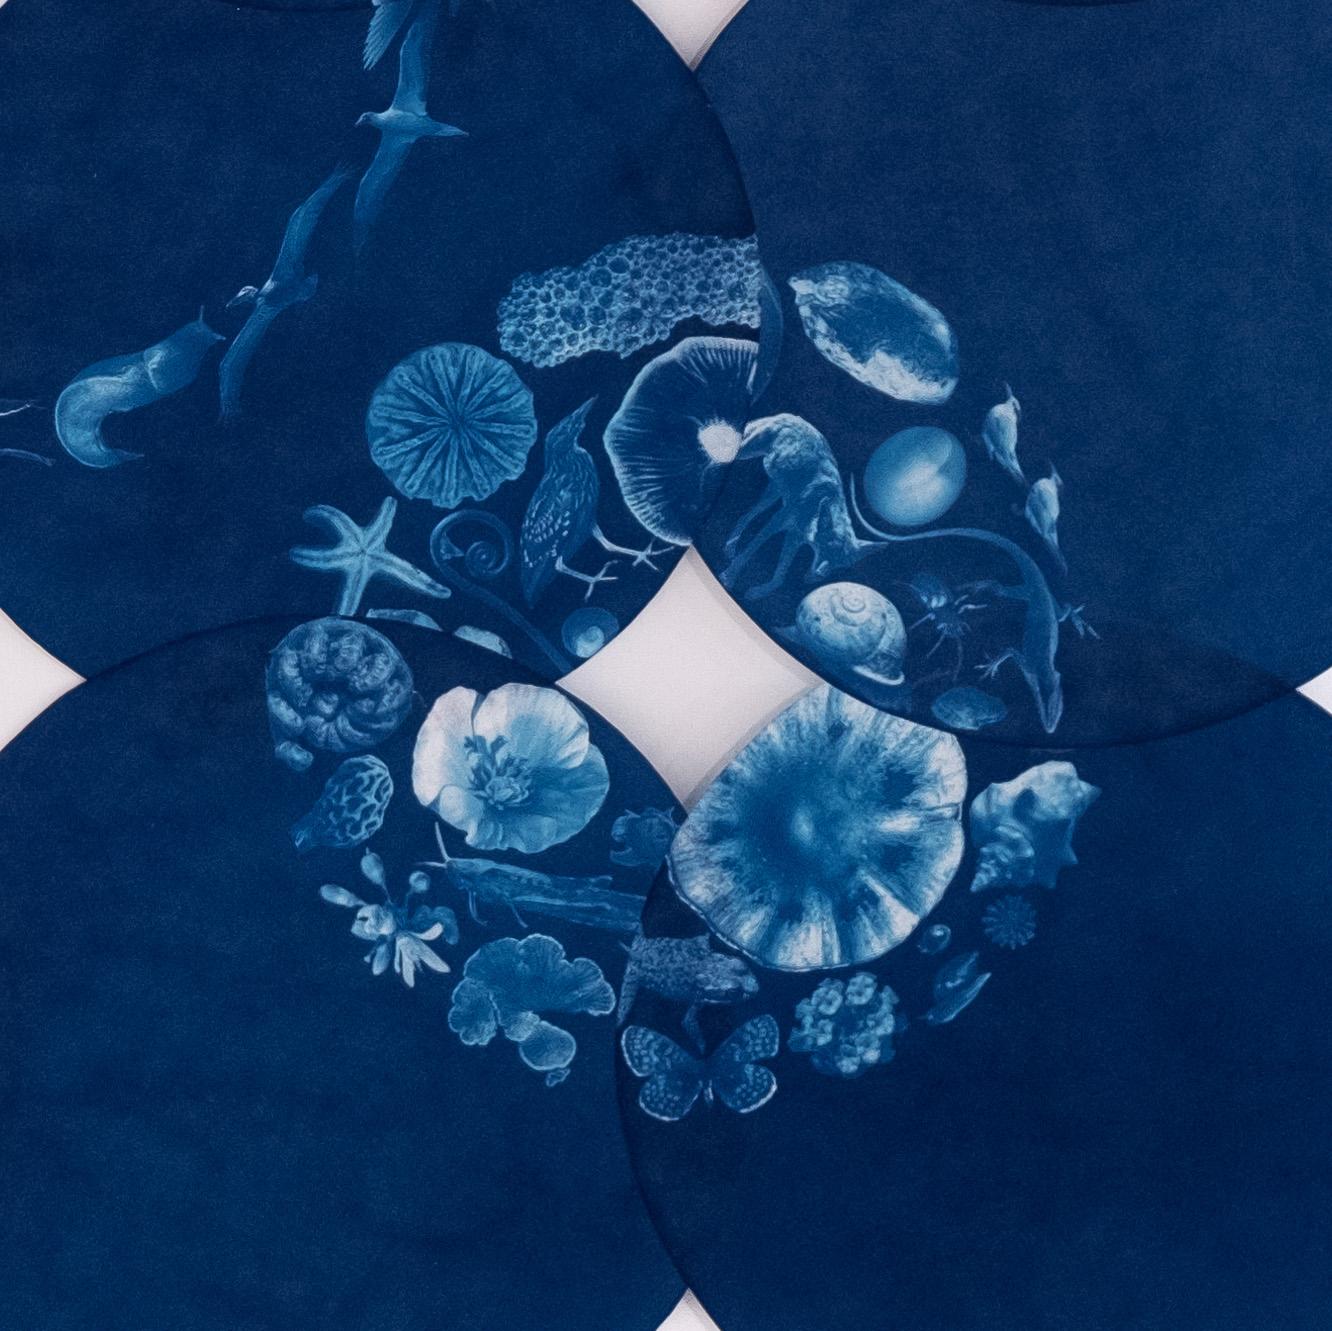 Eine alternative Cyanotypie auf Hahnemuhle Sumi-E-Papier, „Cultivation of Silence“ (Konzeptionell), Photograph, von Annelise Neil